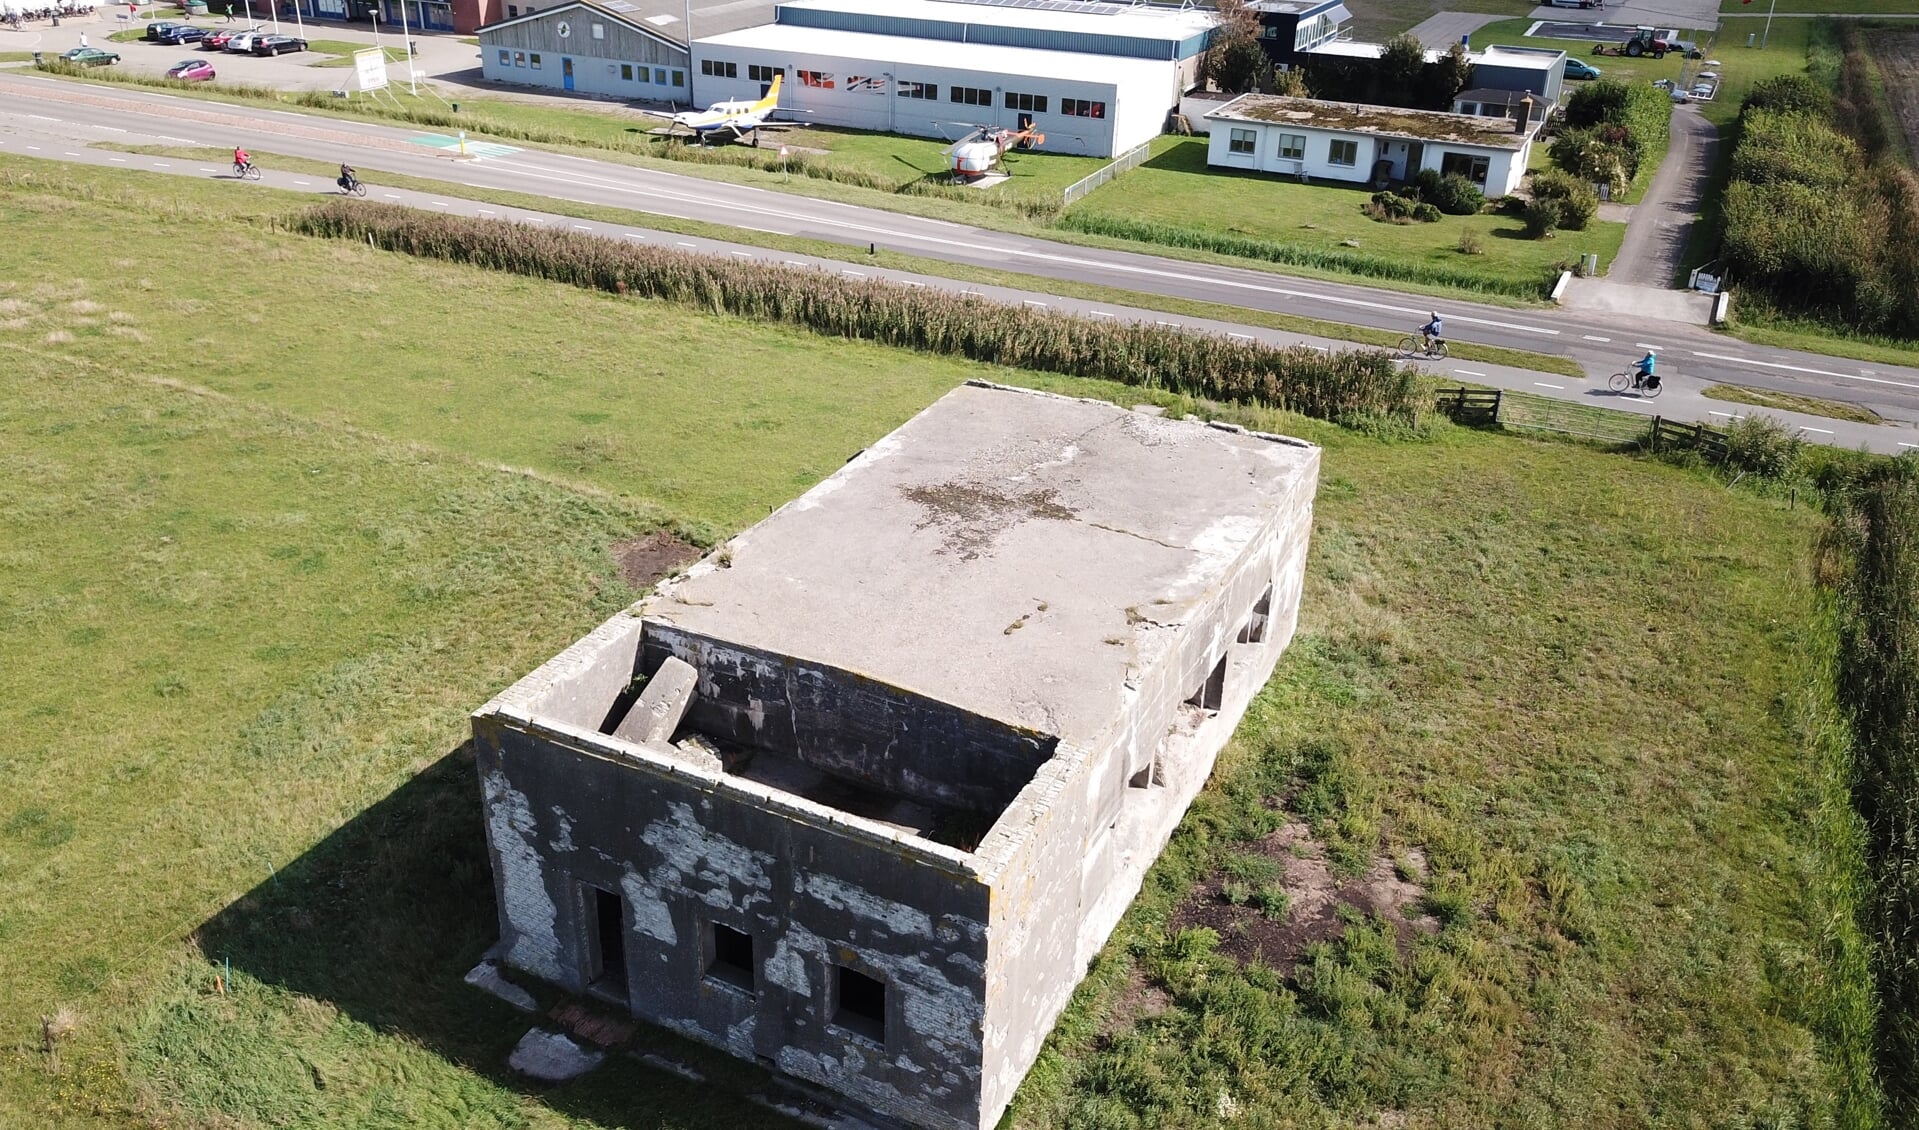 De bunker tegenover het vliegveld. De foto is gemaakt, voordat de bunker in de steigers kwam te staan.